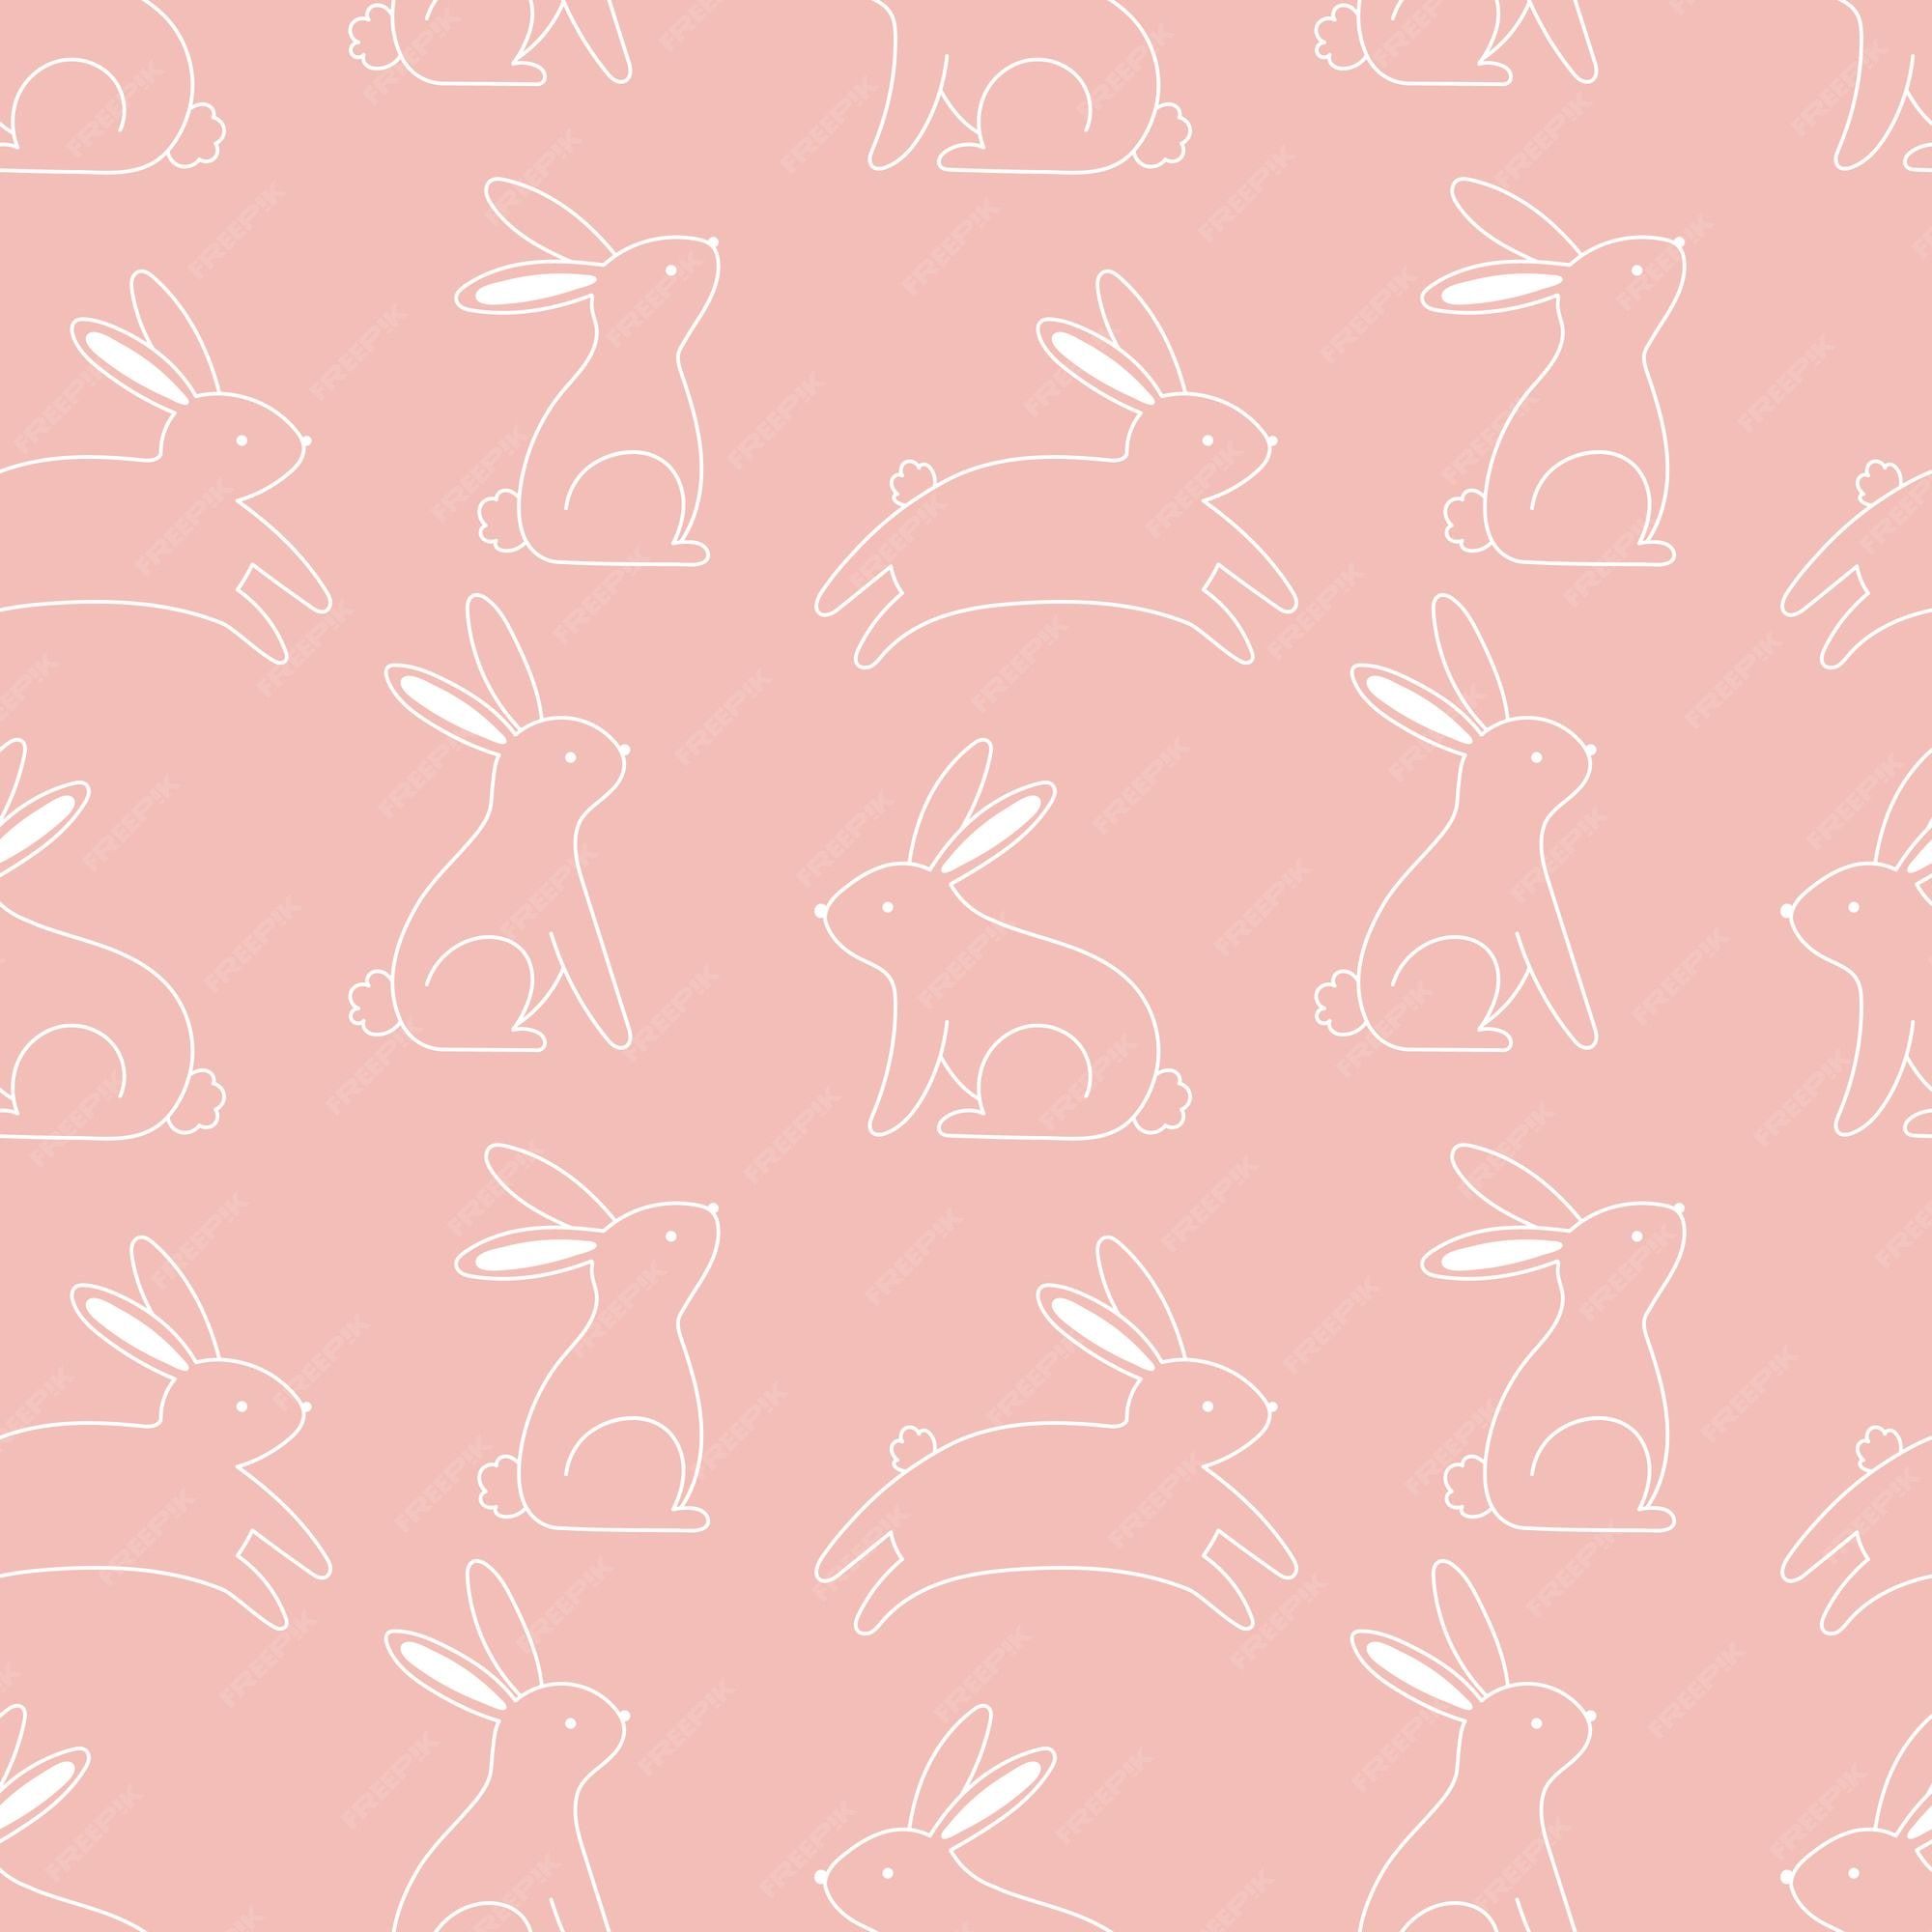  Hasen Hintergrundbild 2000x2000. Nettes nahtloses muster mit umrissen von kaninchen auf einem rosa hintergrund